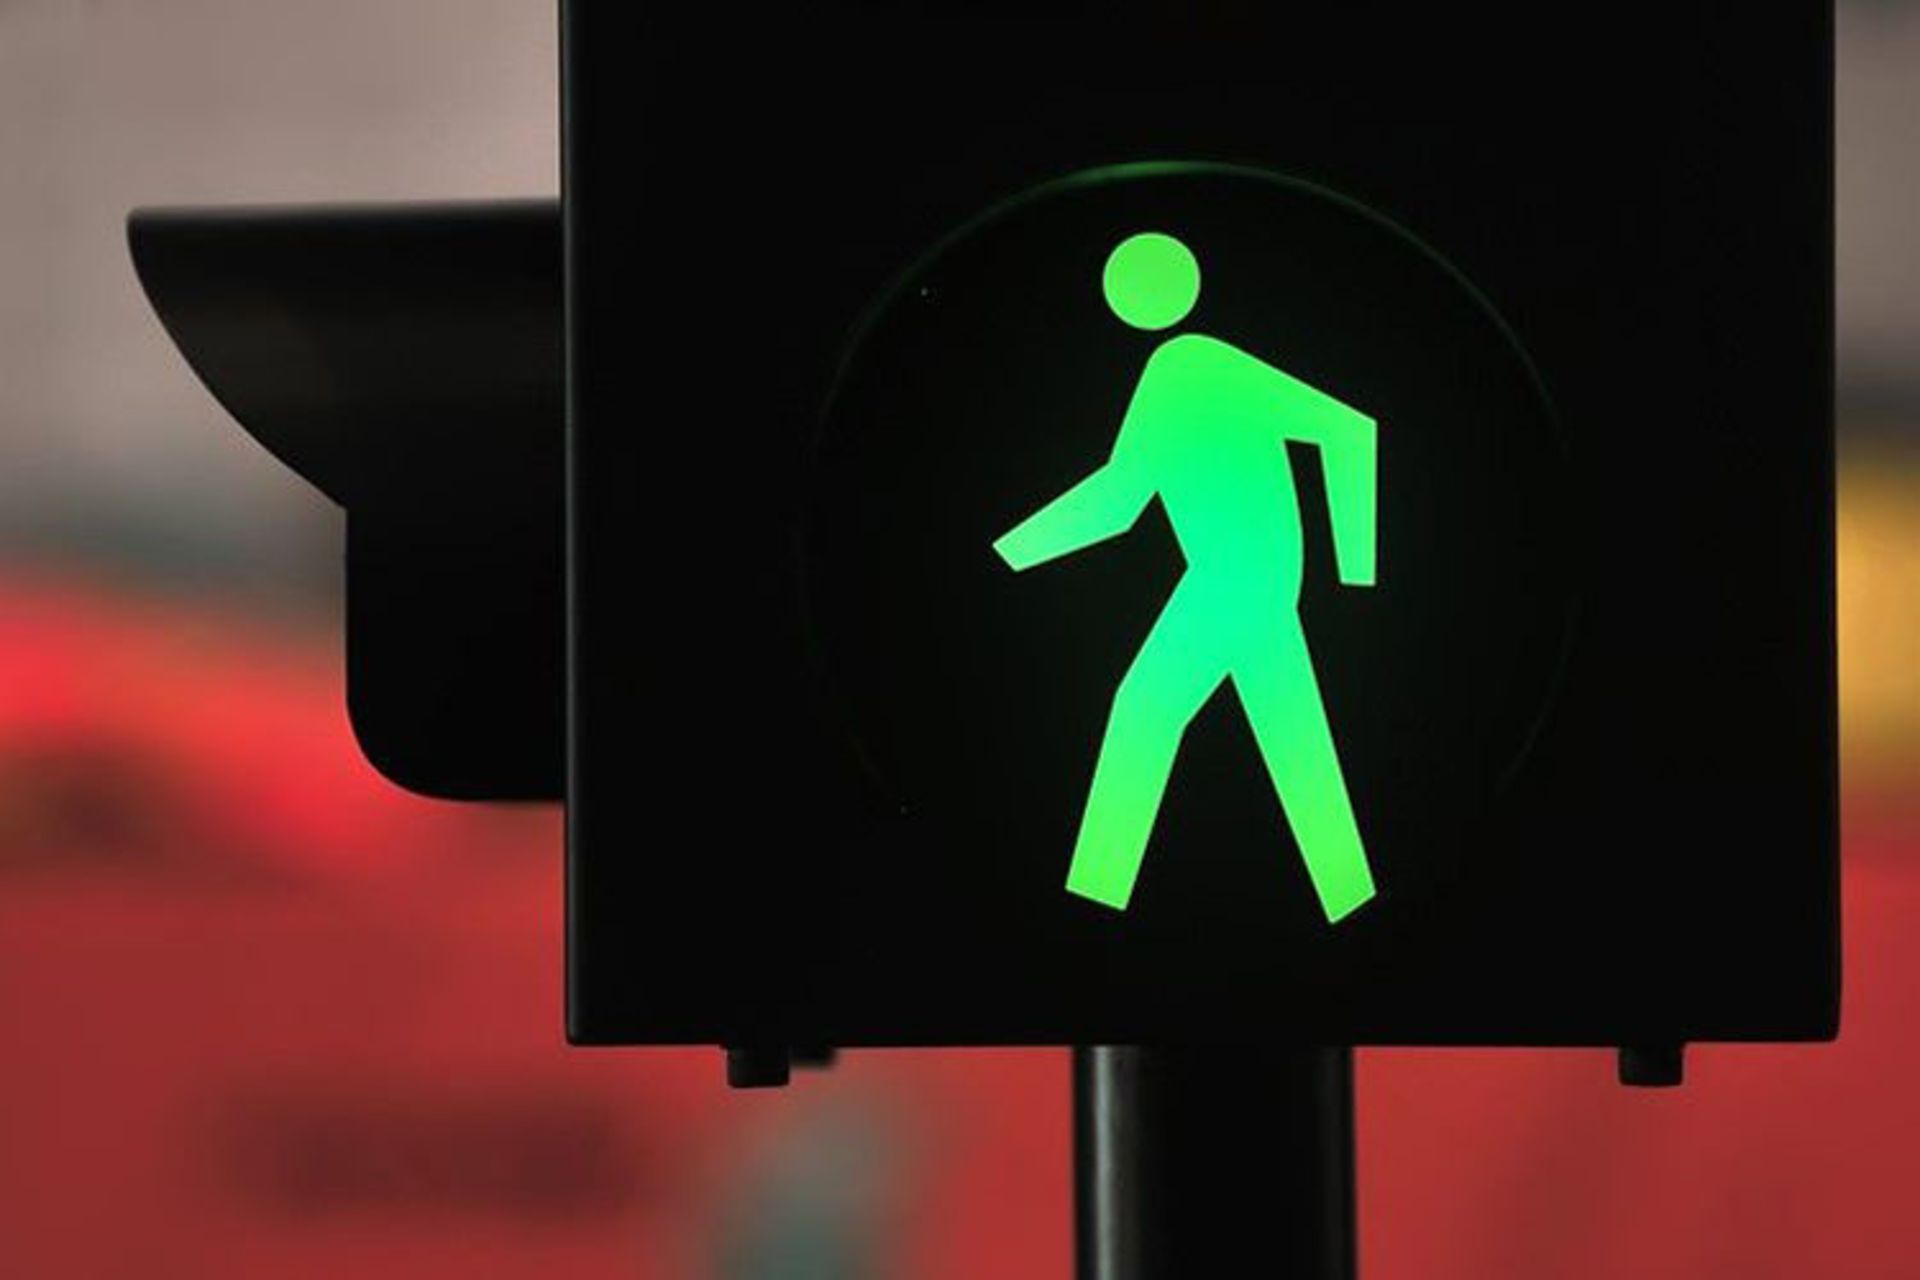 مرجع متخصصين ايران smart traffic light / چراغ راهنمايي هوشمند